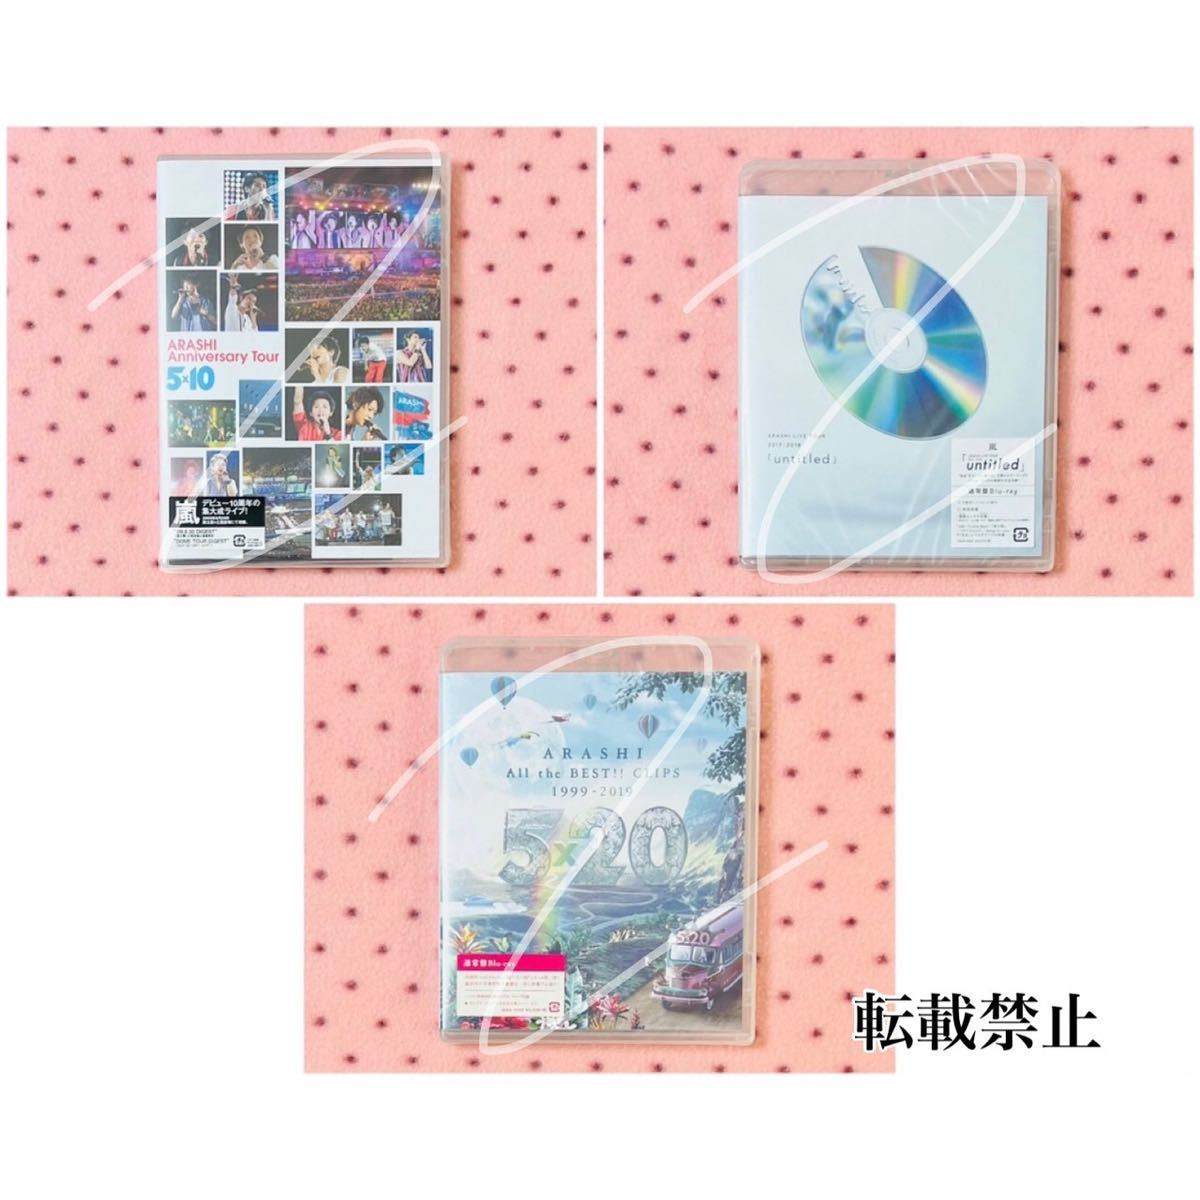 嵐 ARASHI LIVE DVD Blu-ray シングル アルバム ③ お買得 本・音楽 